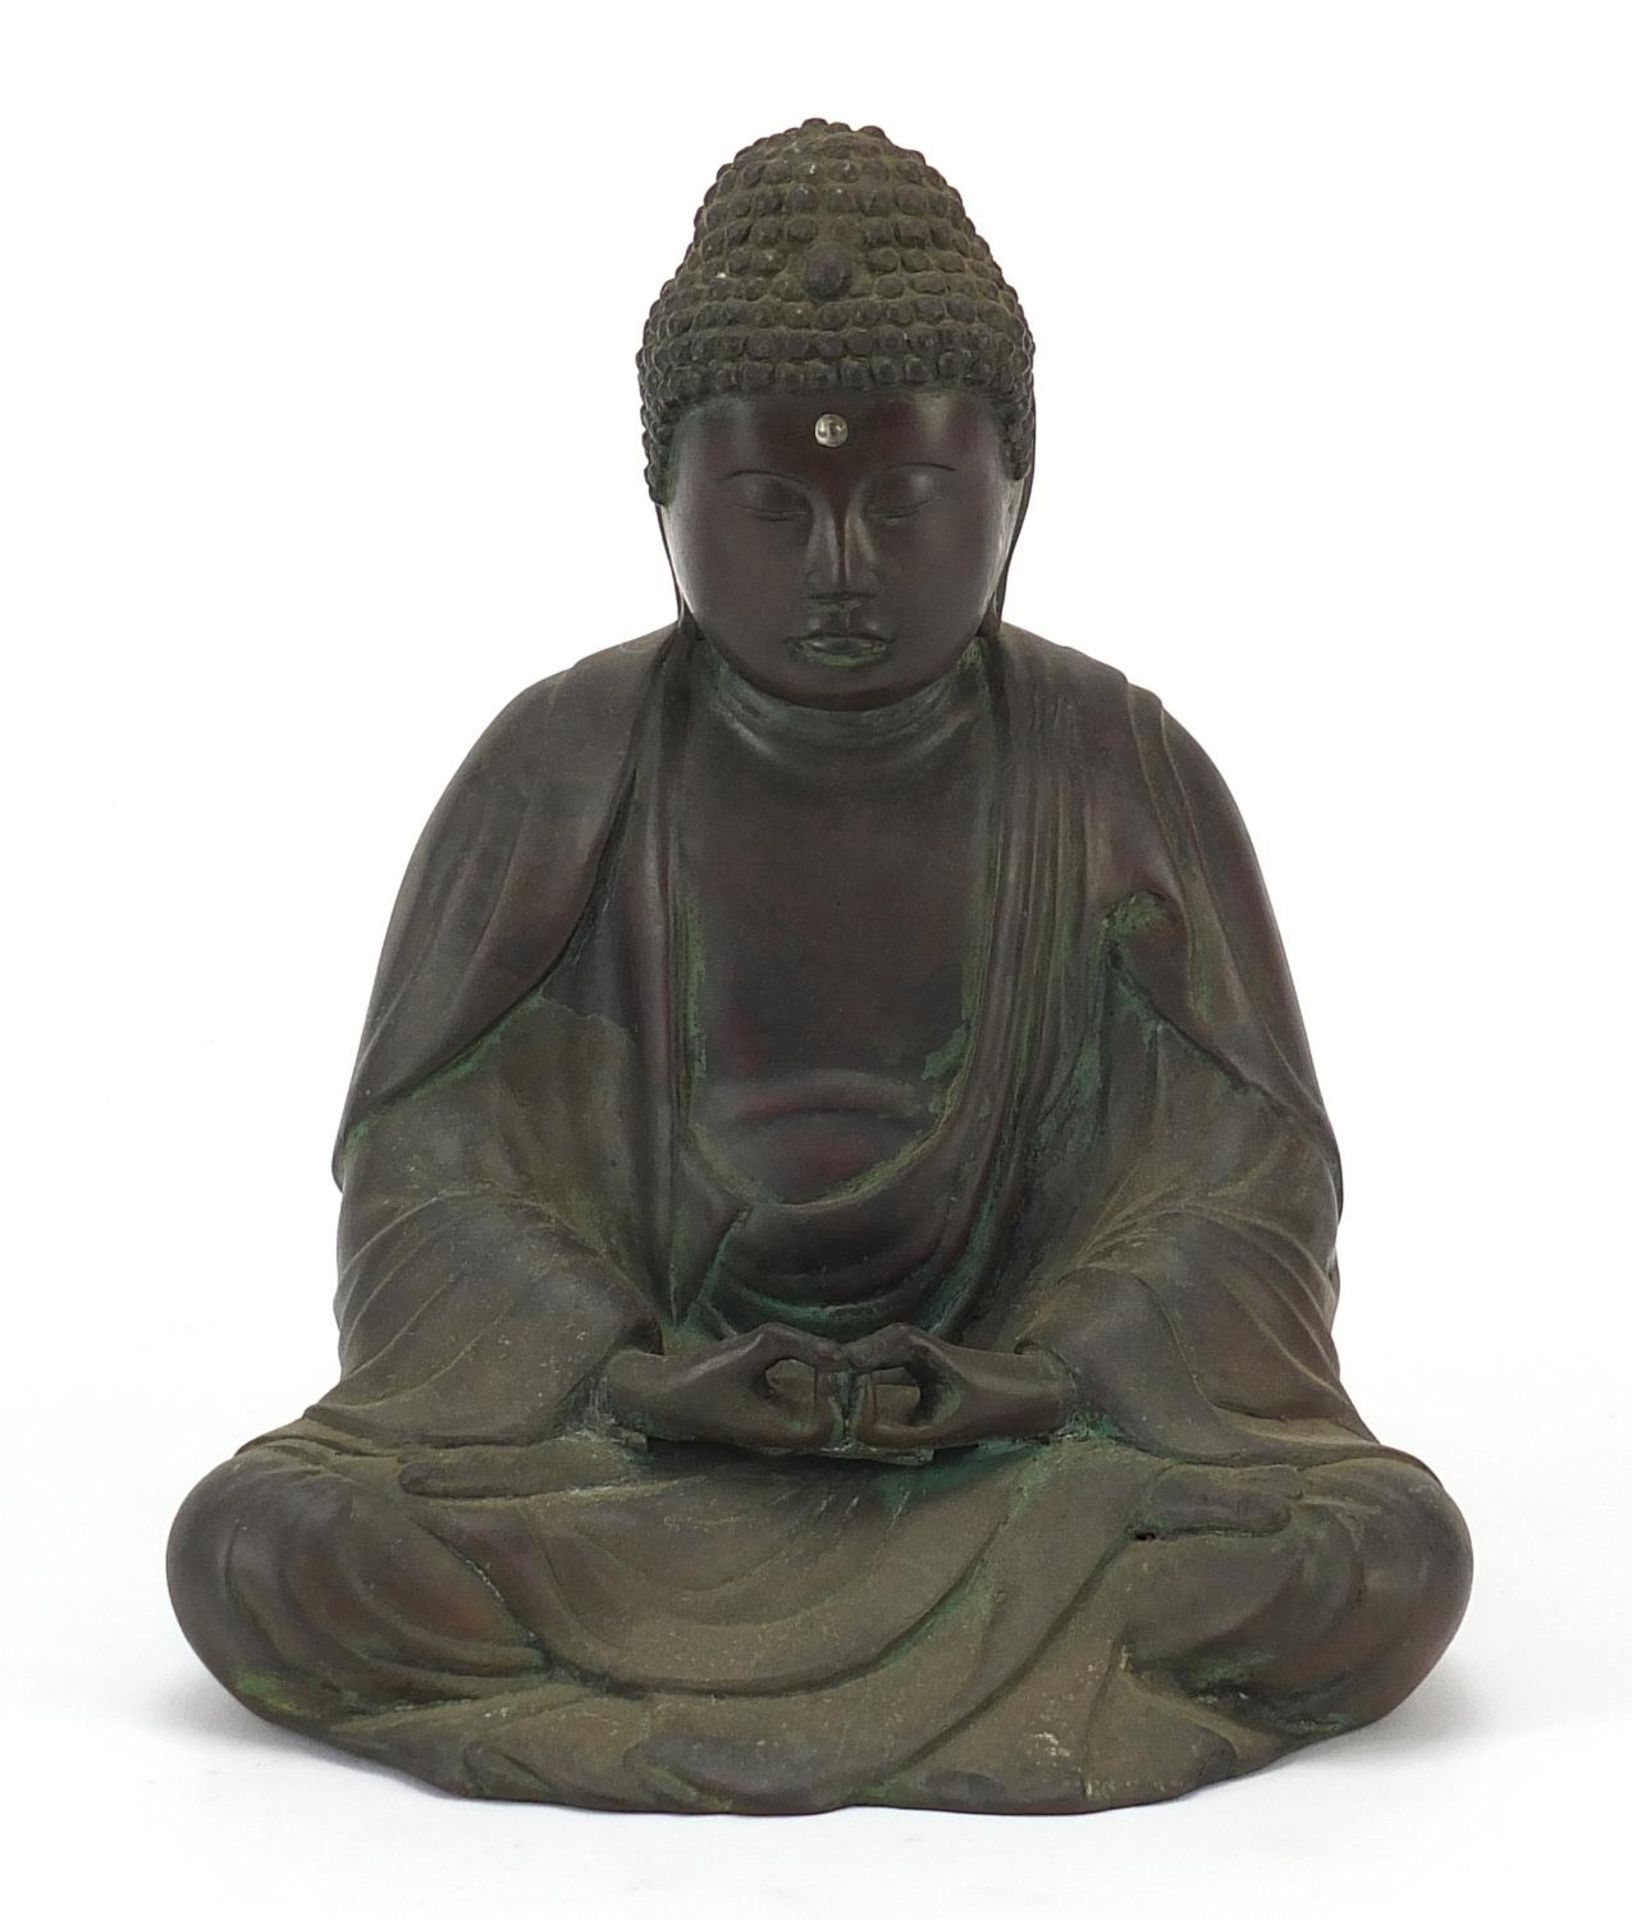 Chino Tibetan patinated bronze figure of seated Buddha, 18cm high